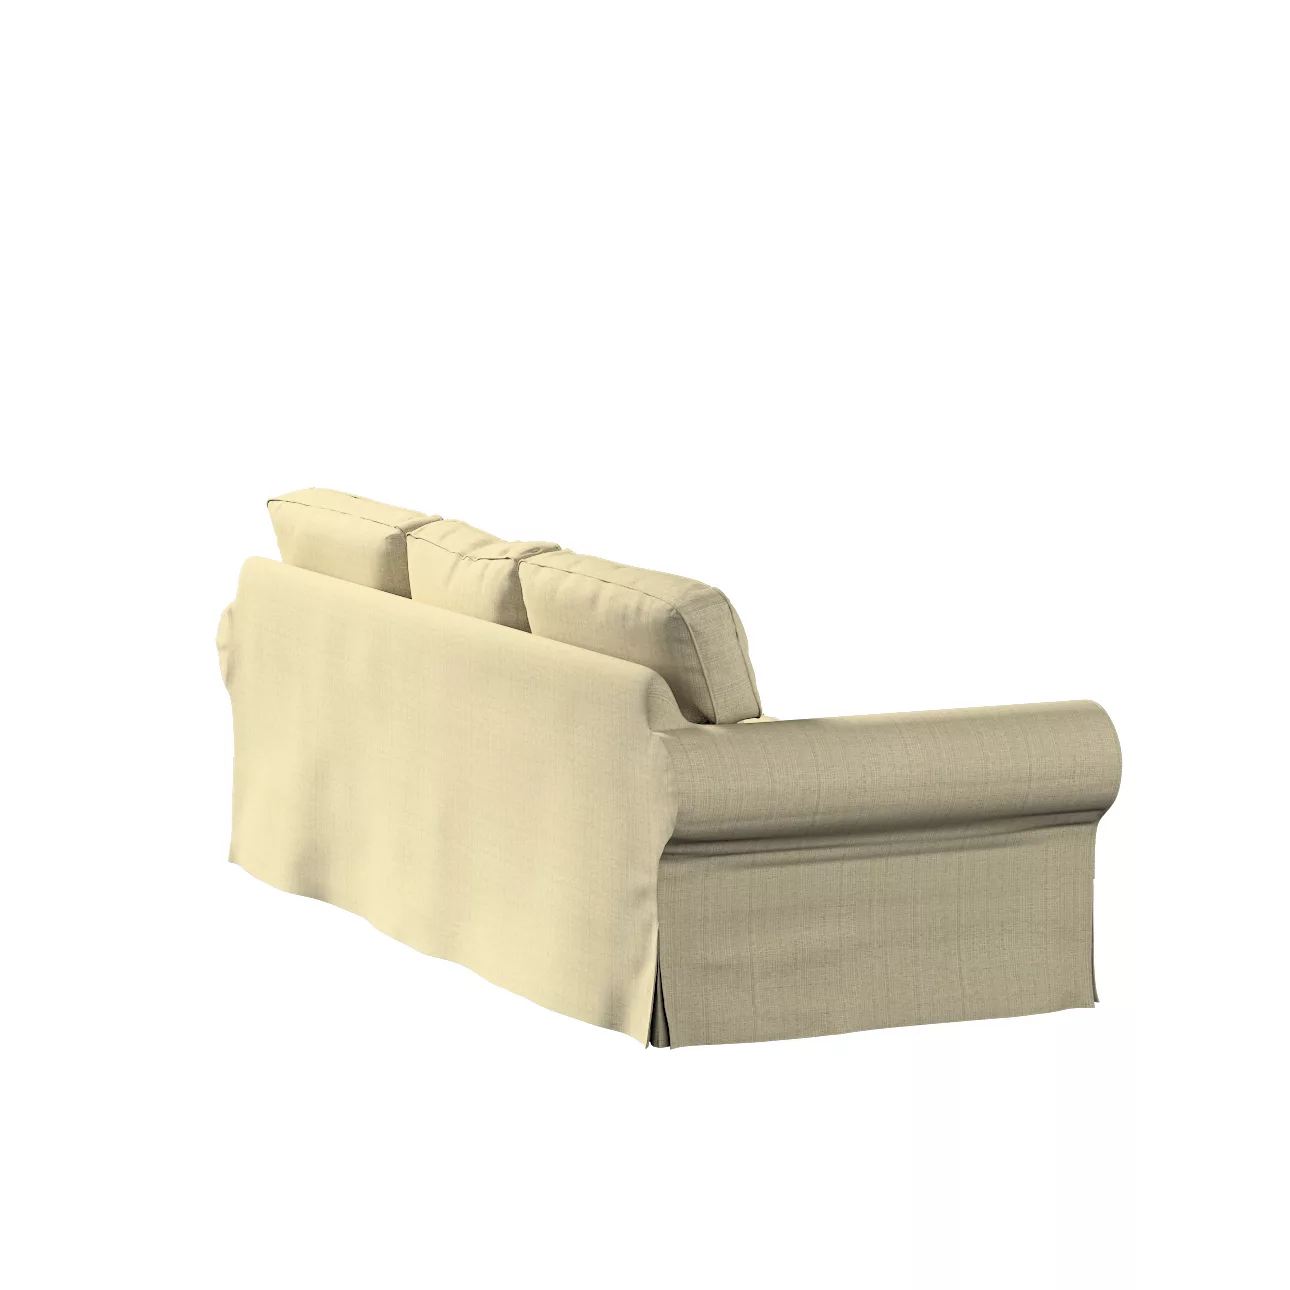 Bezug für Ektorp 3-Sitzer Schlafsofa, neues Modell (2013), beige-creme, 40c günstig online kaufen